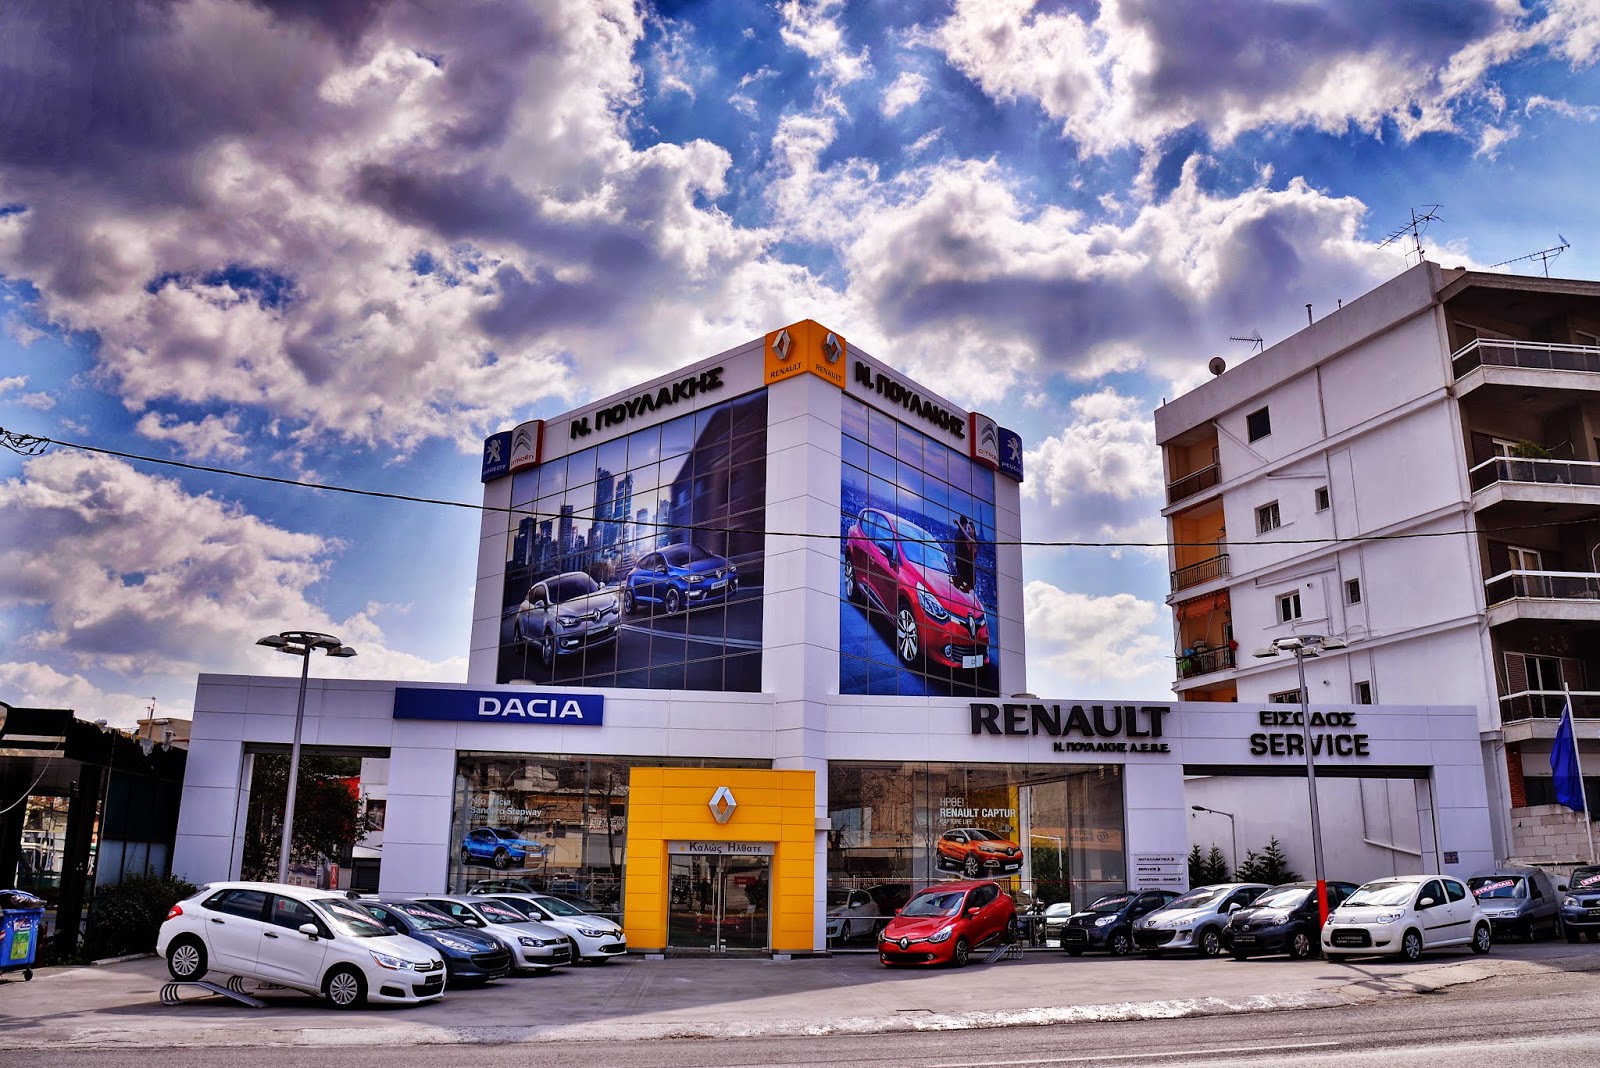 Η Ν. Πουλάκης ΑΕΒΕ ανακοινώνει την συνεργασία της με την TEOREN MOTORS, αποκλειστικός εισαγωγέας αυτοκινήτων και ανταλλακτικών Renault –Dacia - Φωτογραφία 1